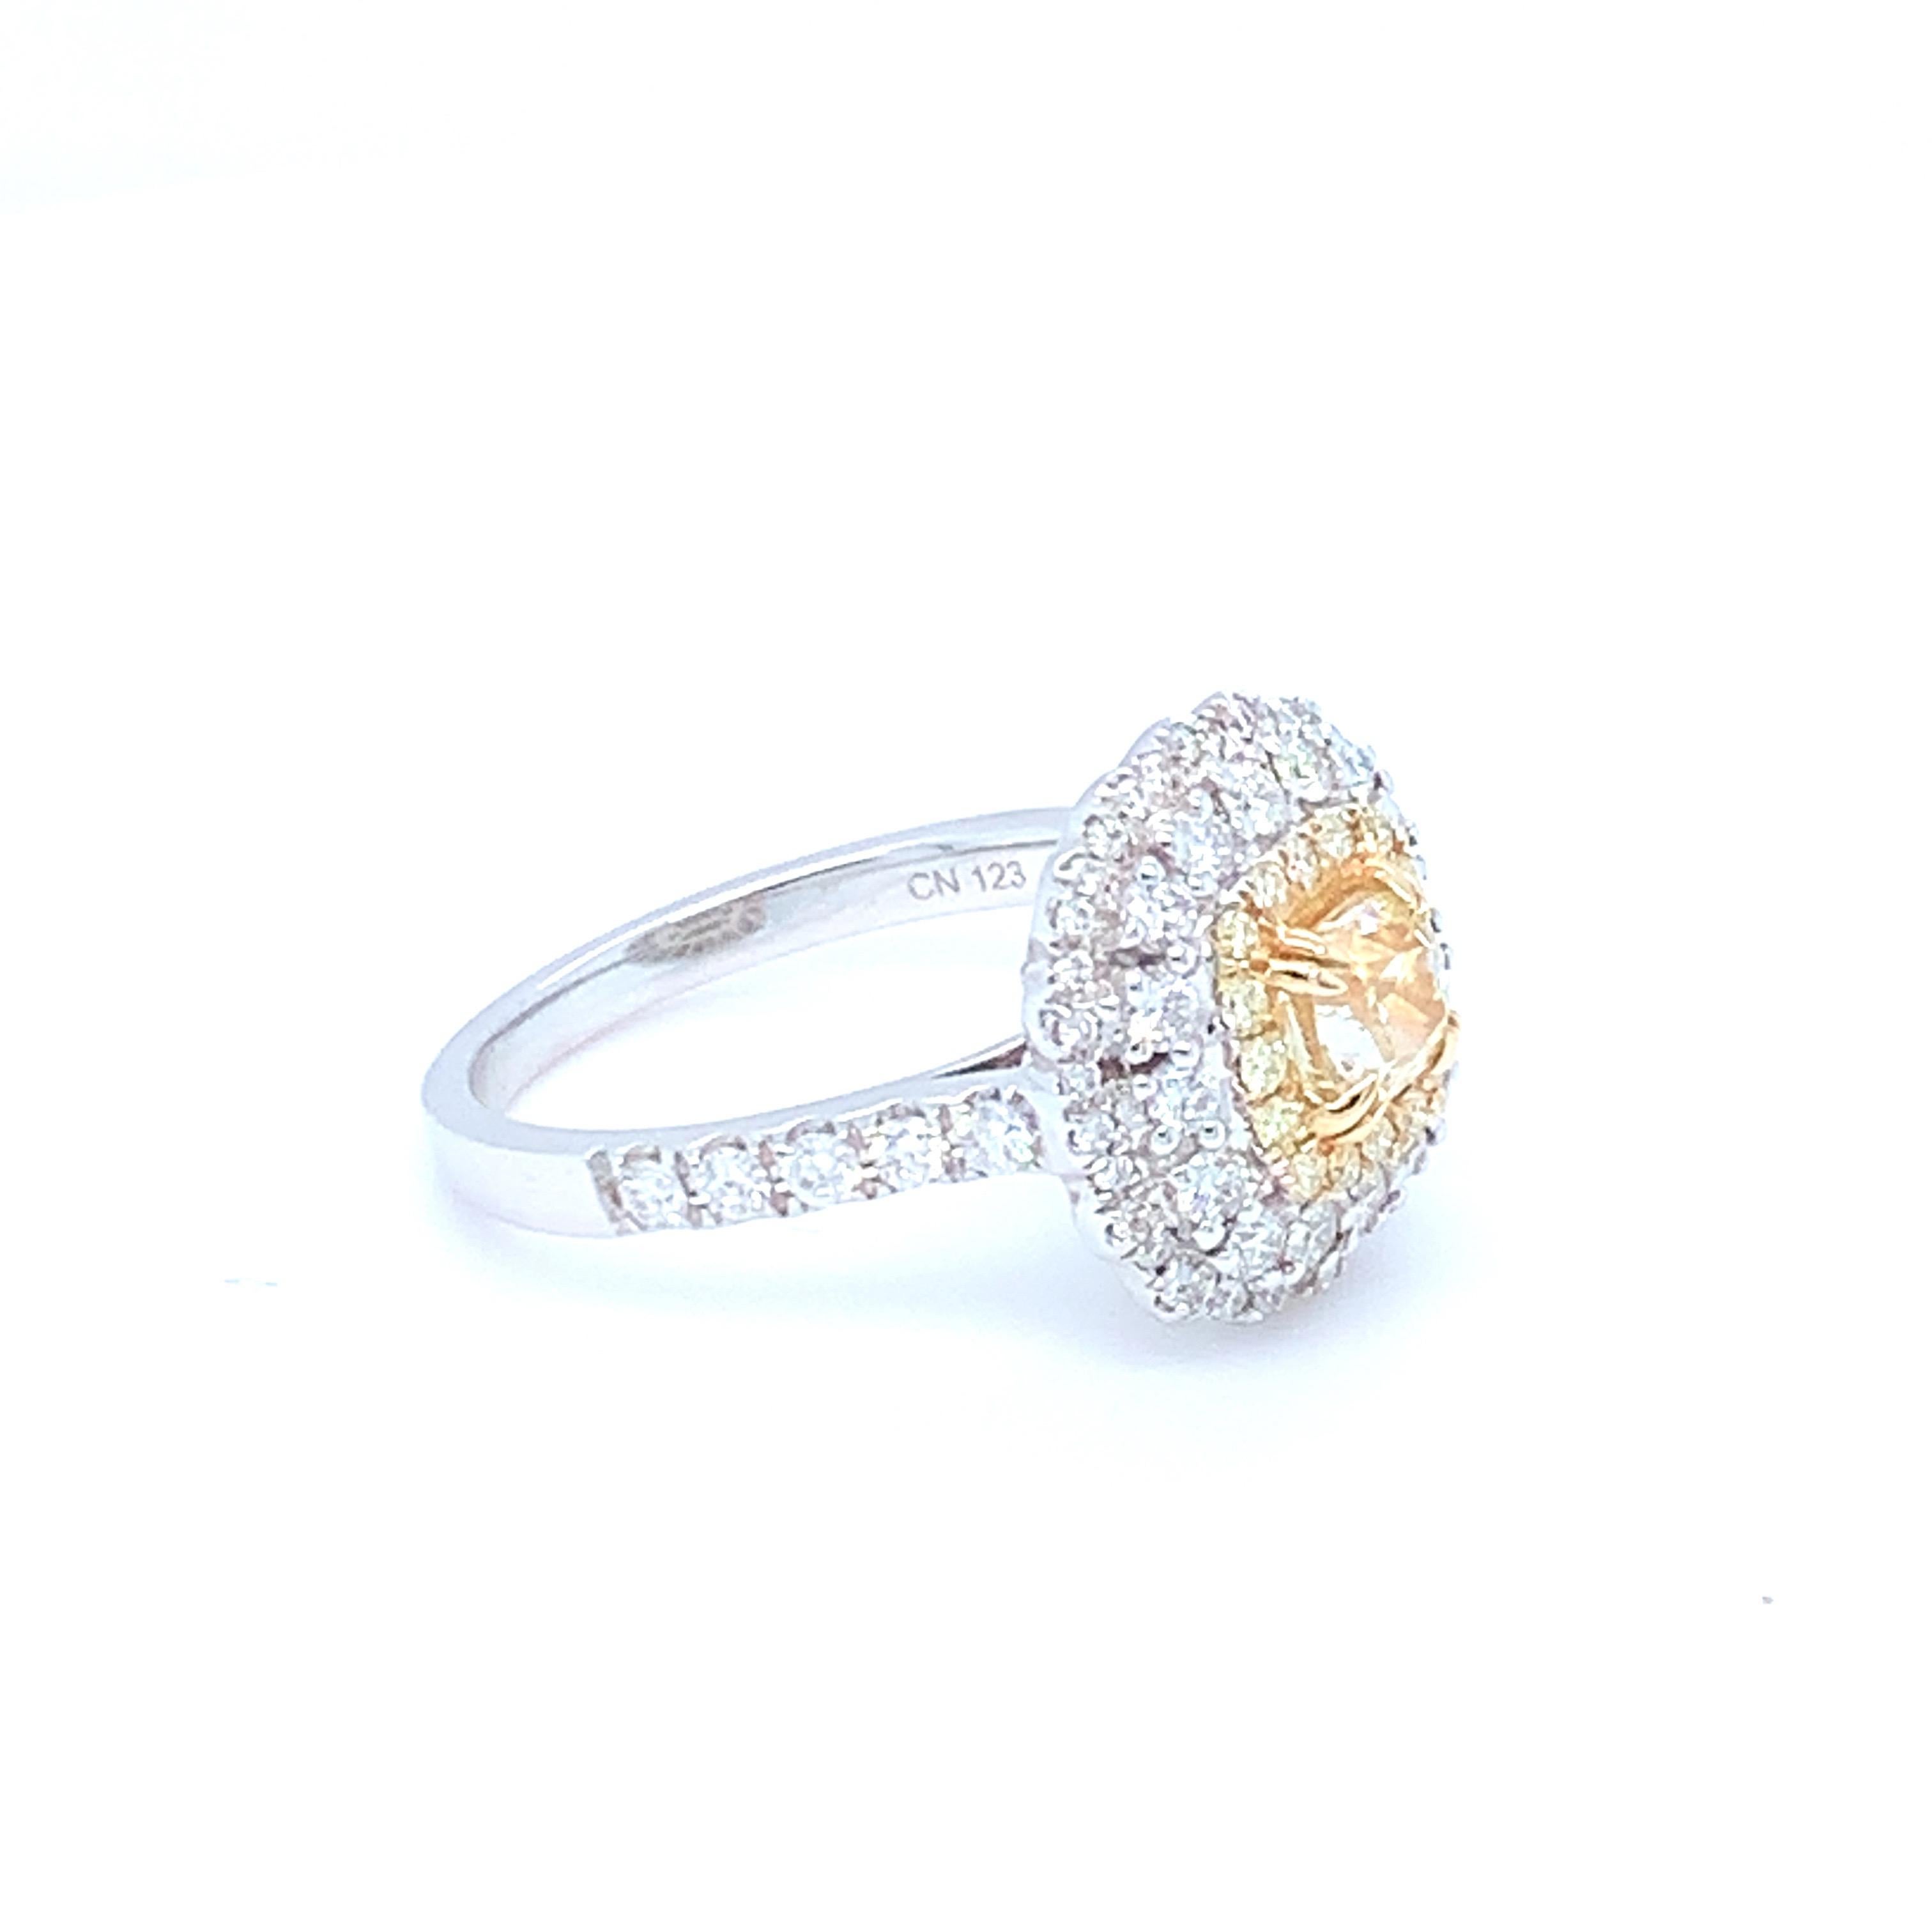 Artisan 0.69 Carat Cushion Yellow Diamond White Diamond Halo Ring Set in 14 Karat Gold For Sale